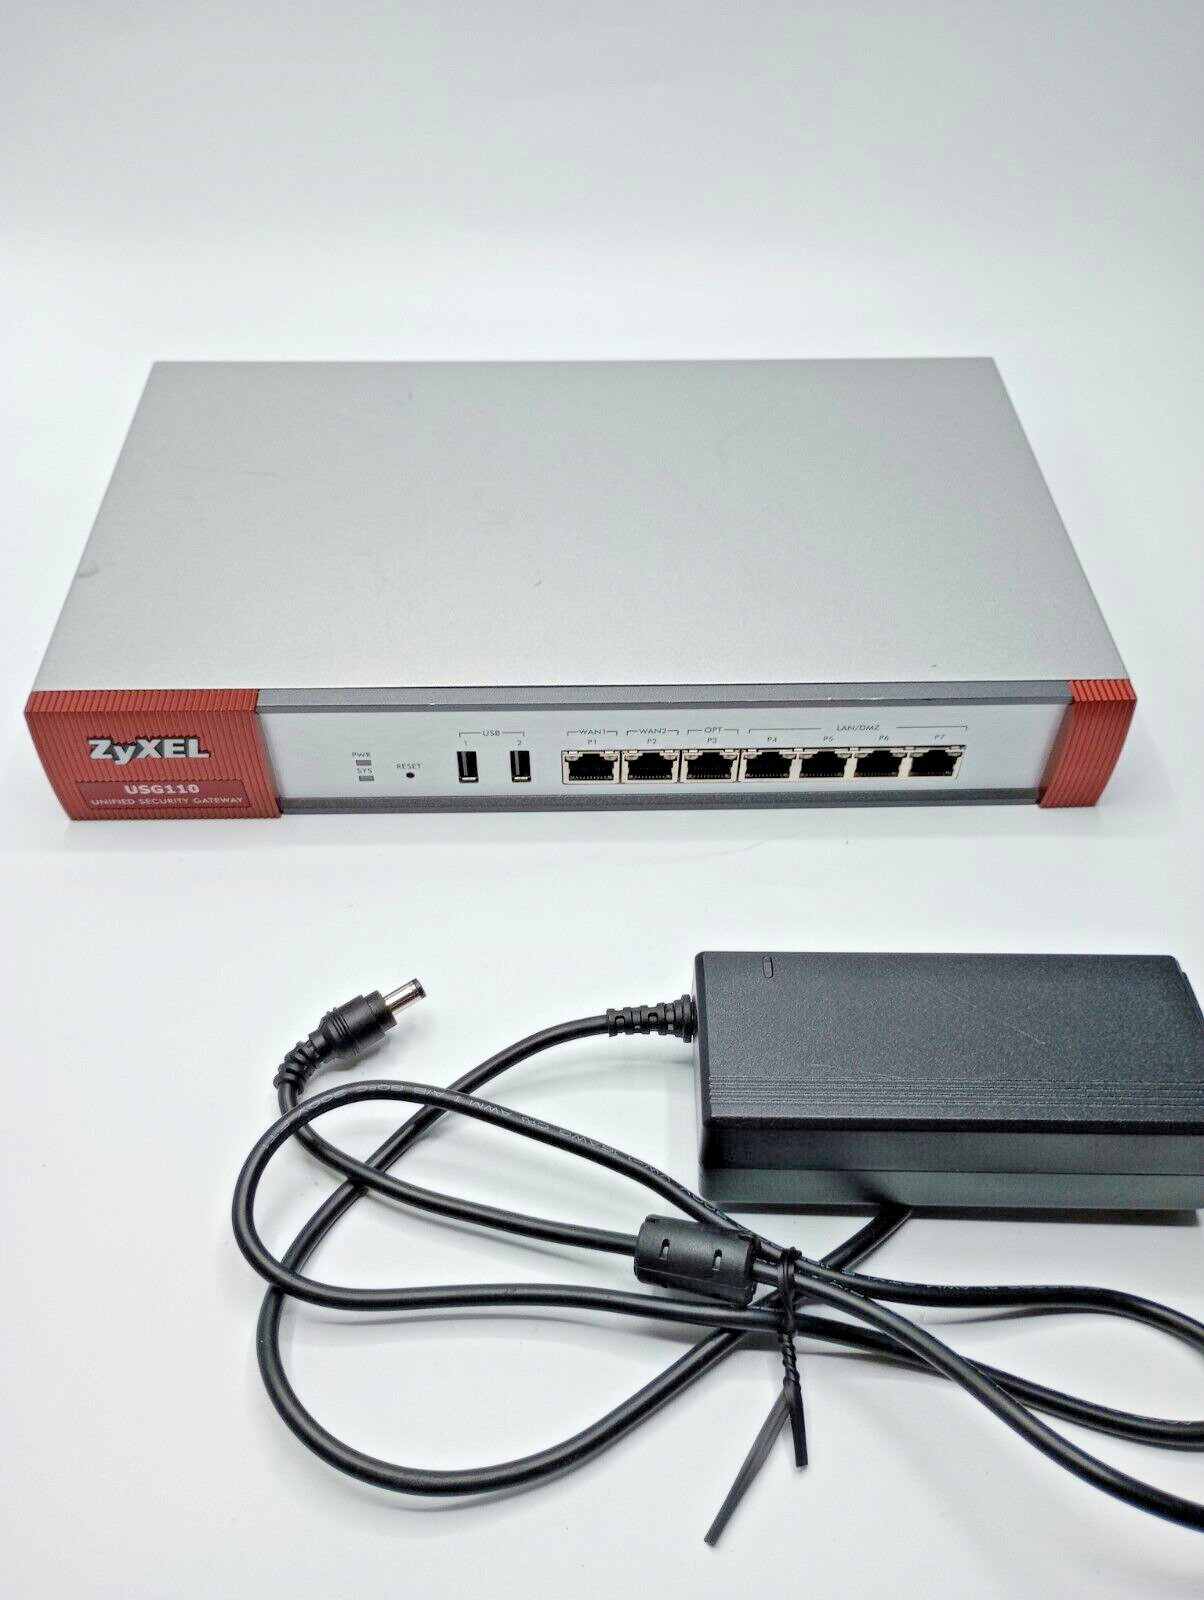 ZyXEL USG110 Unified Security Gateway Firewall - With PSU